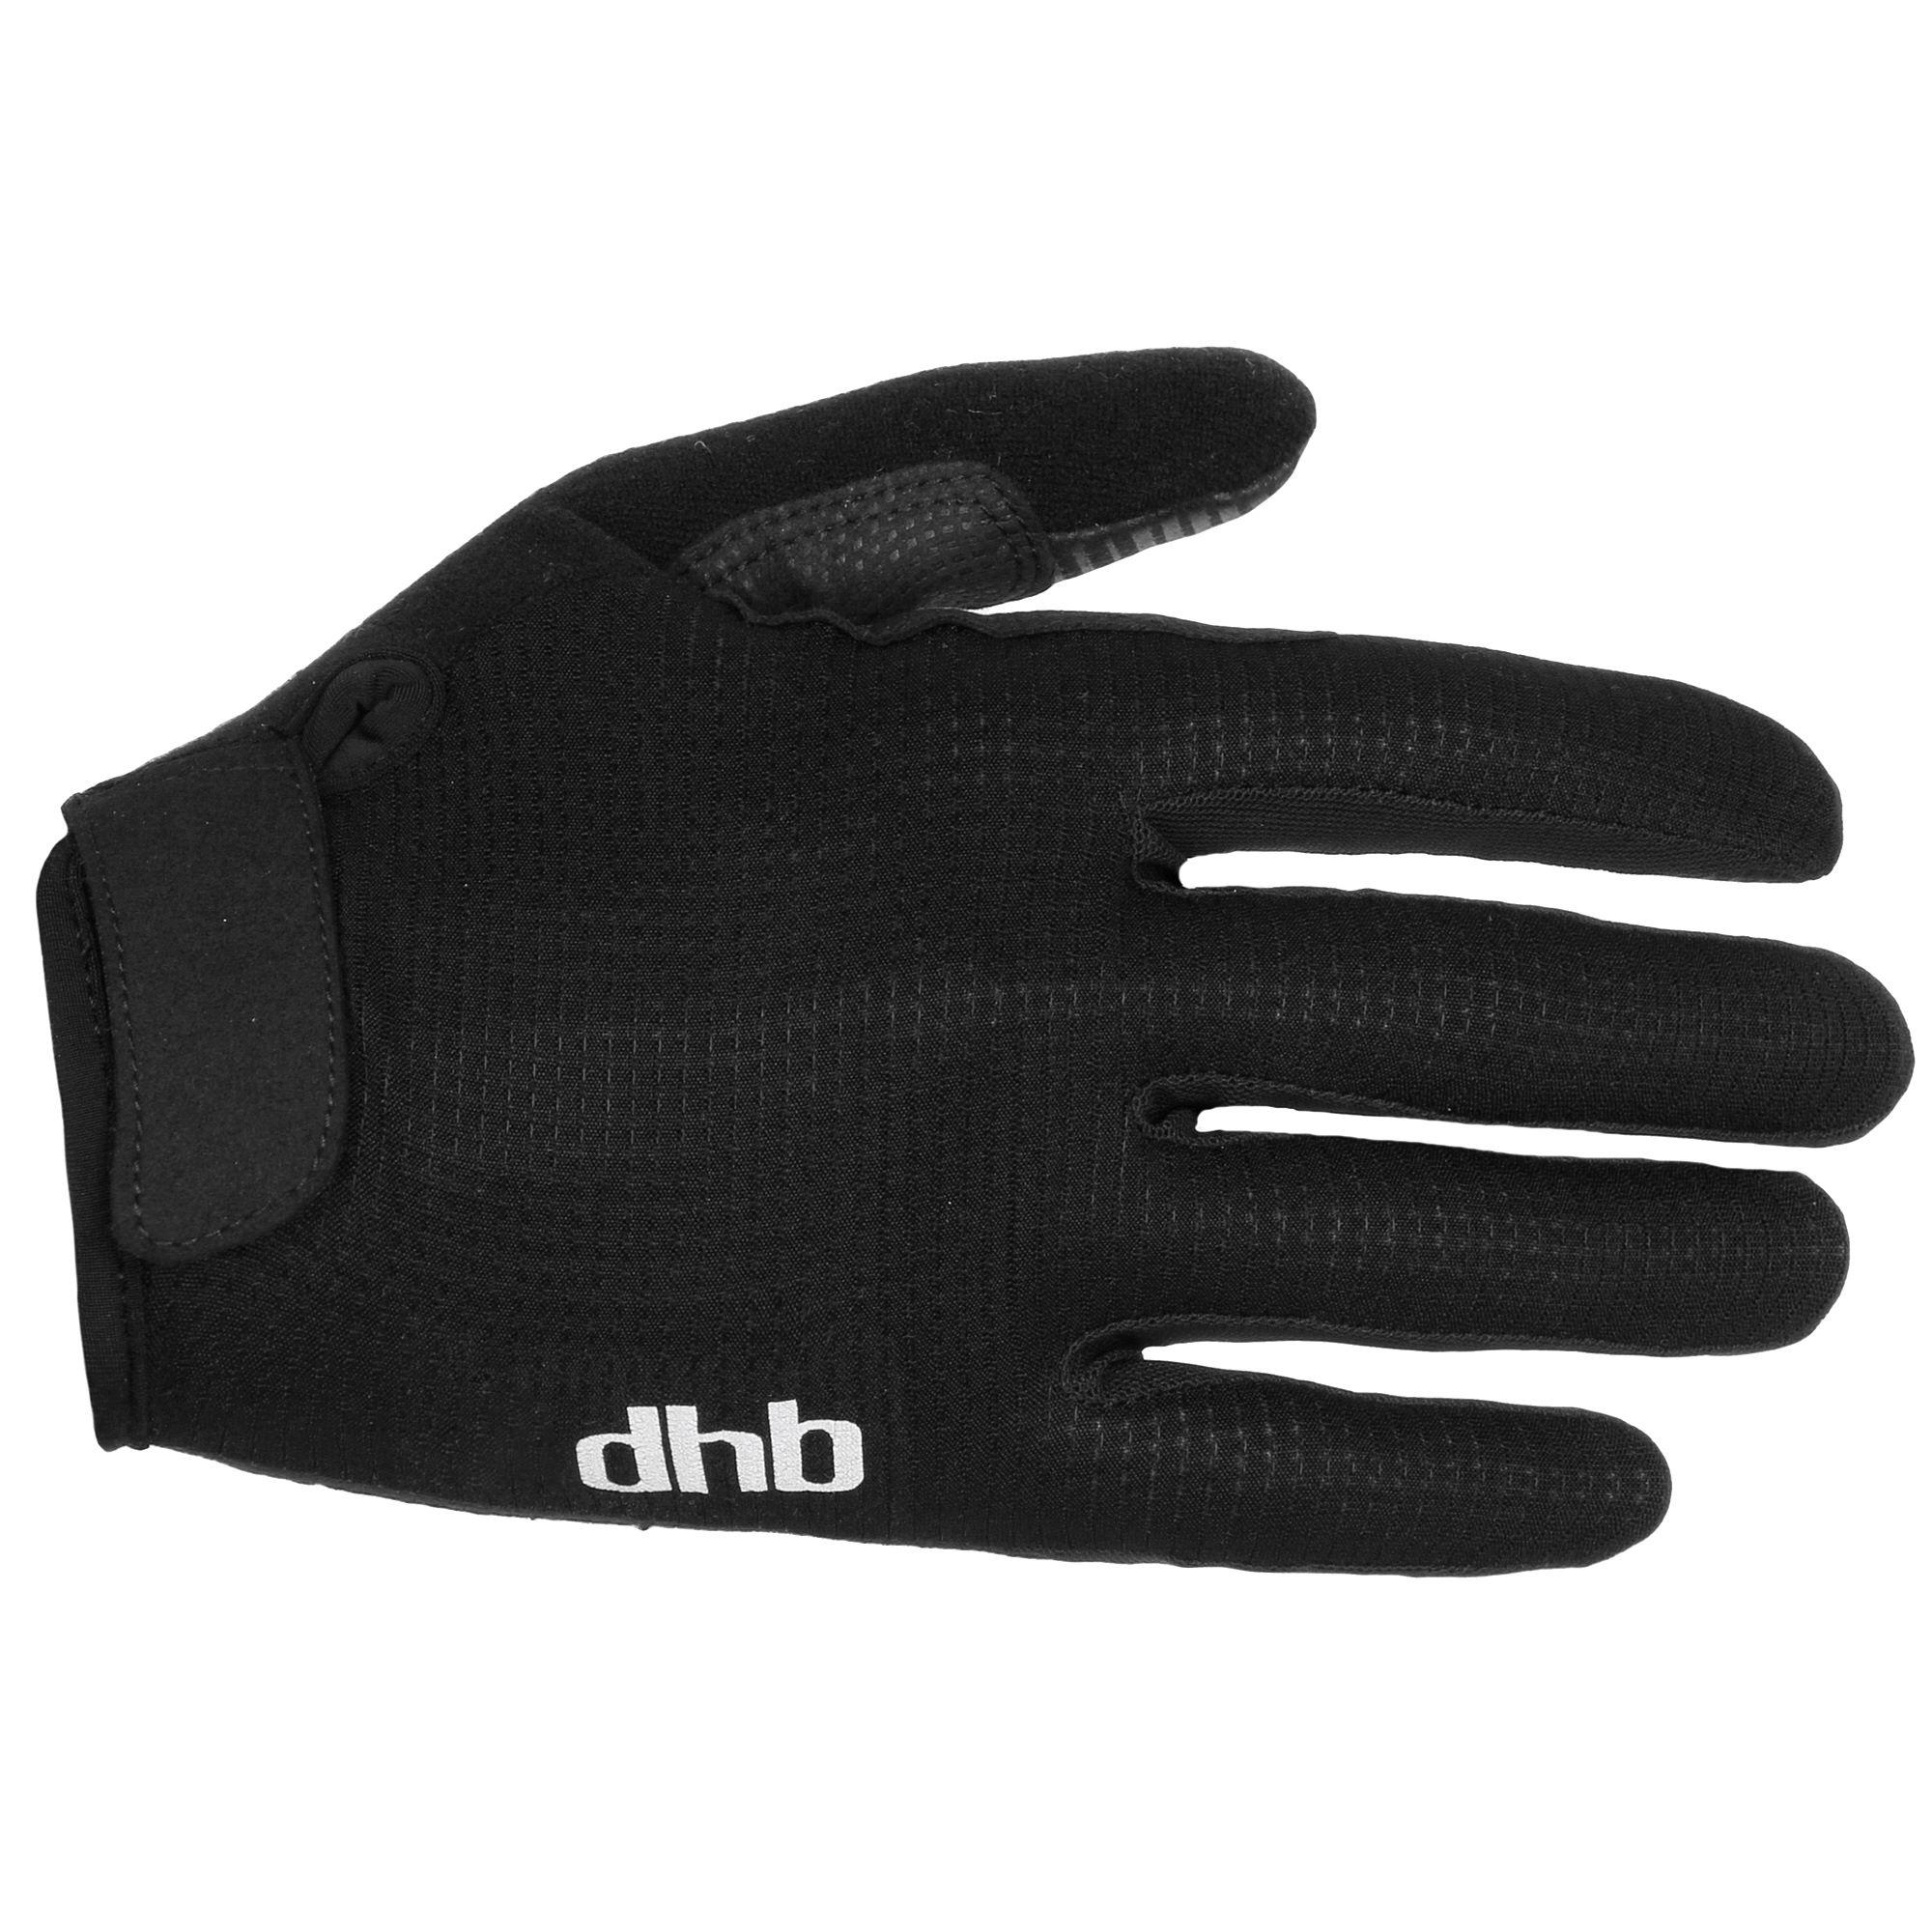 Dhb Lightweight Cycling Gloves - Black